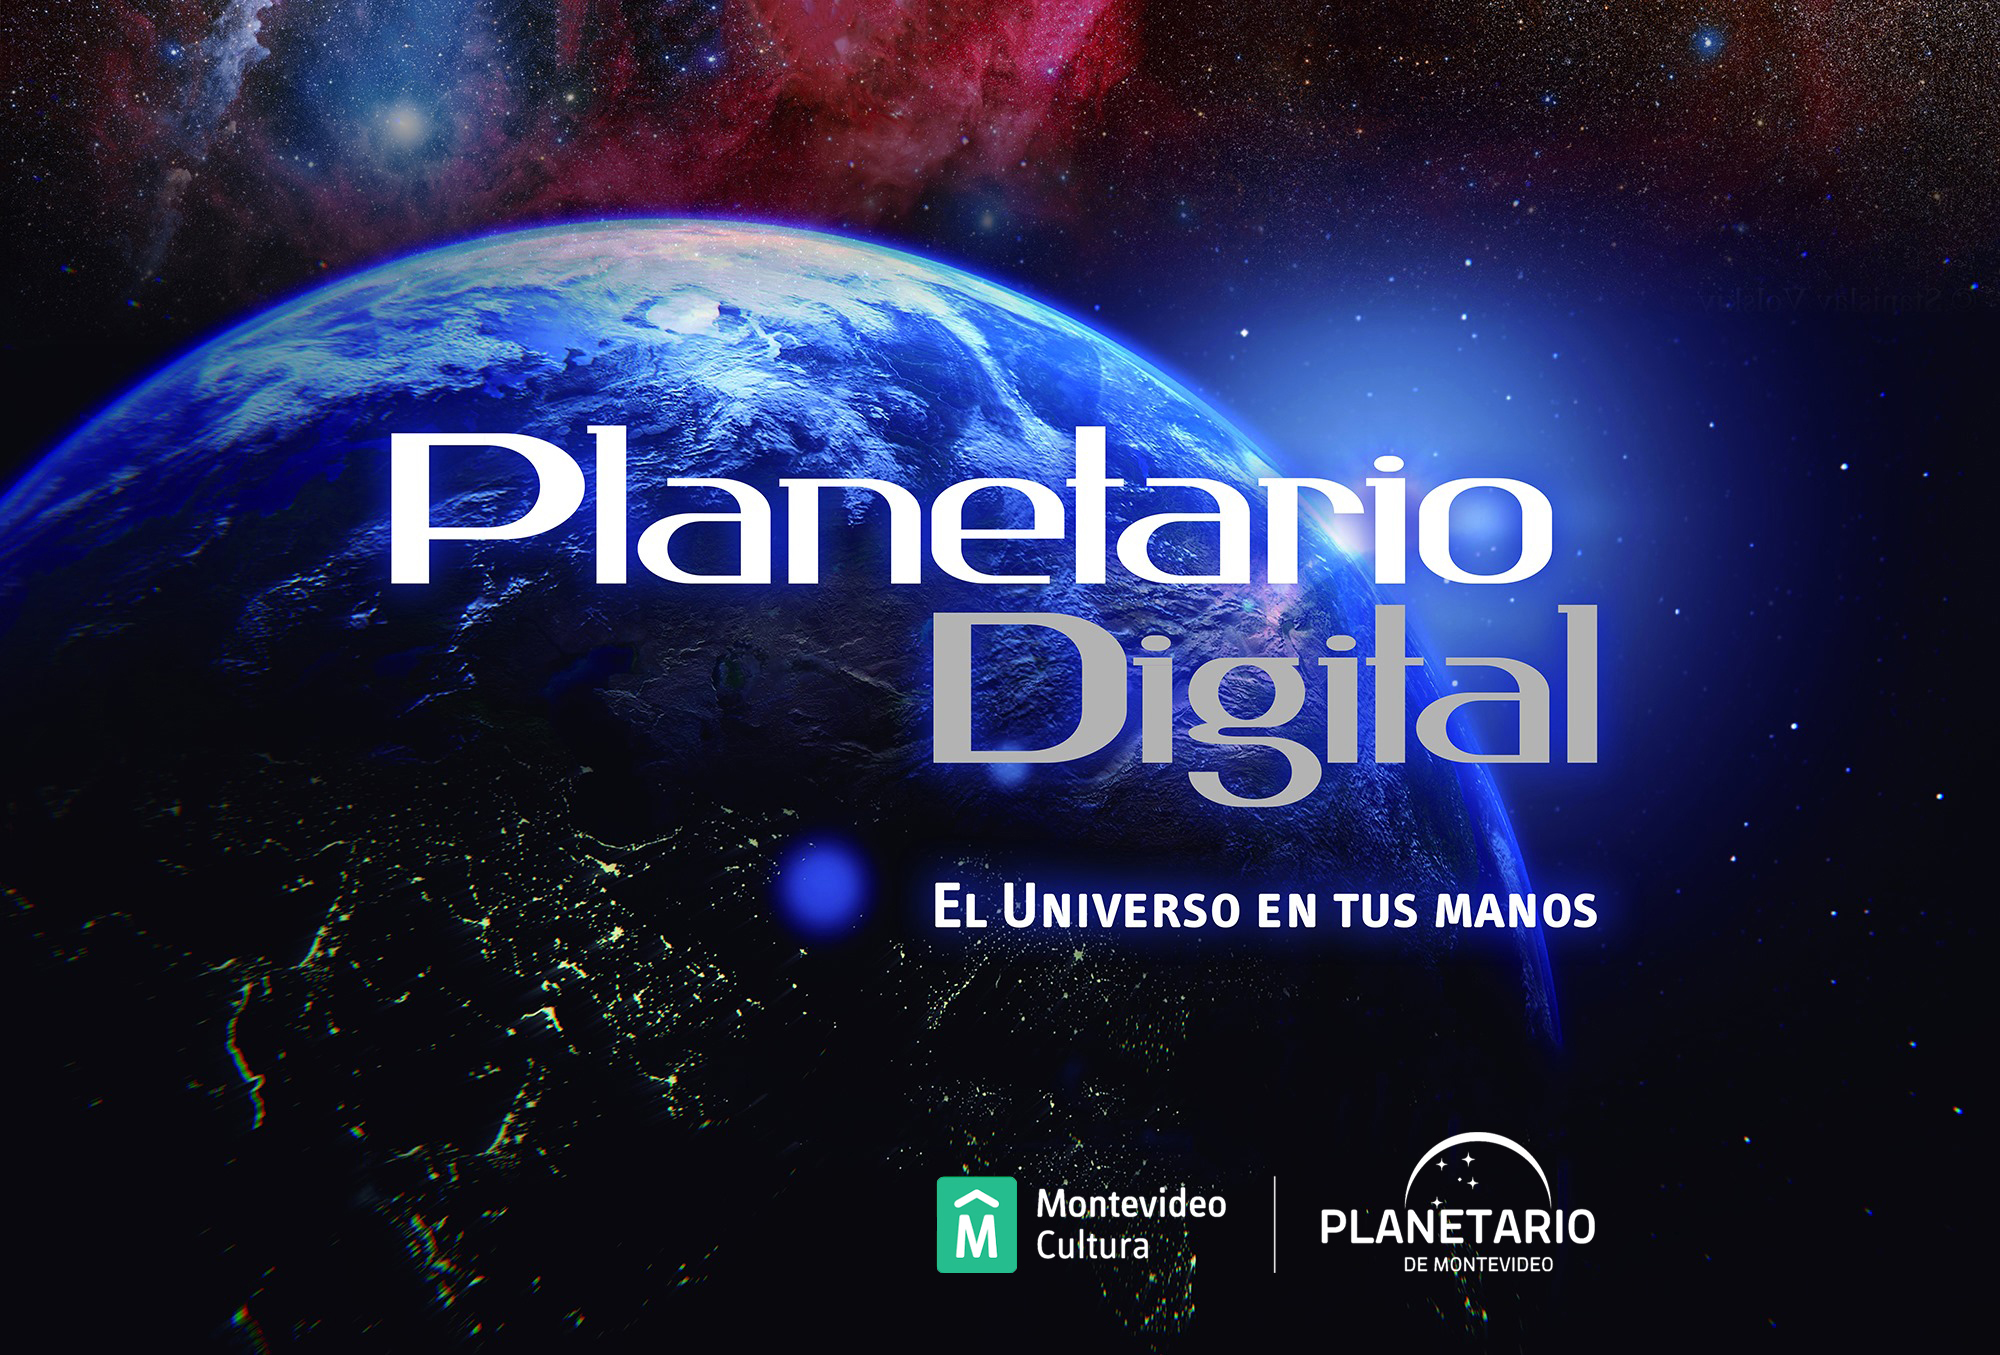 Qué es un planetario digital?